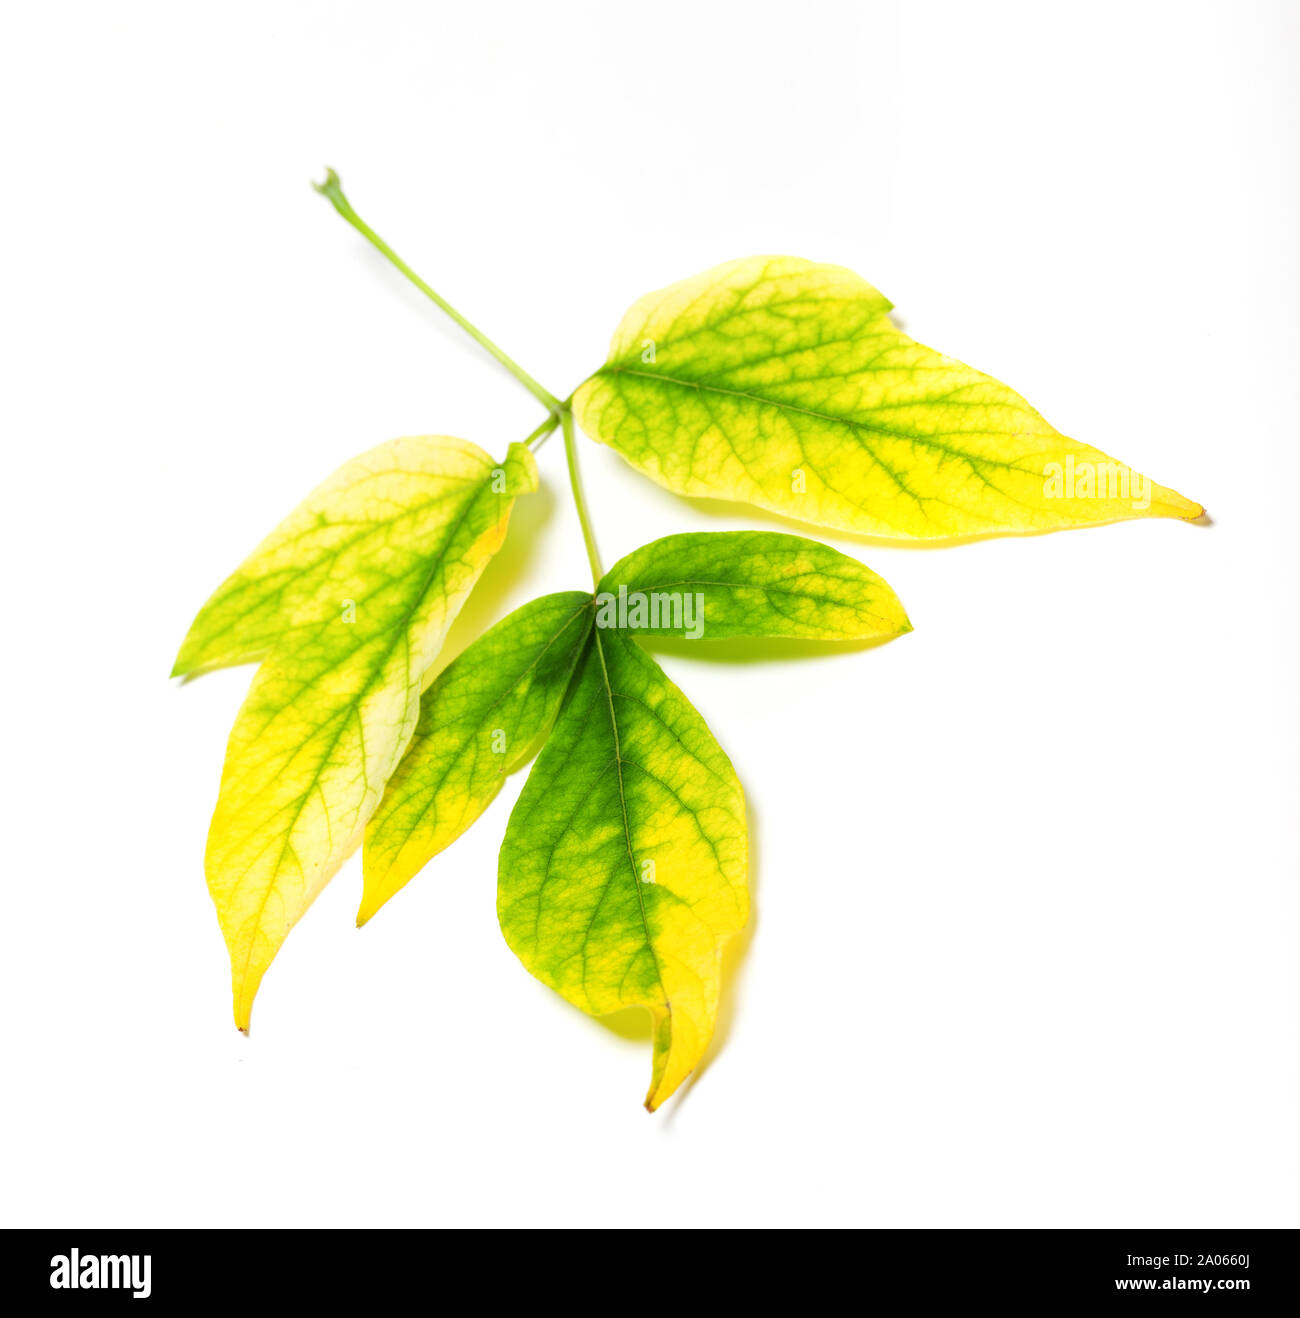 Automne multicolore, feuille d'érable Acer negundo ou érable du Manitoba. Isolé sur fond blanc. Banque D'Images